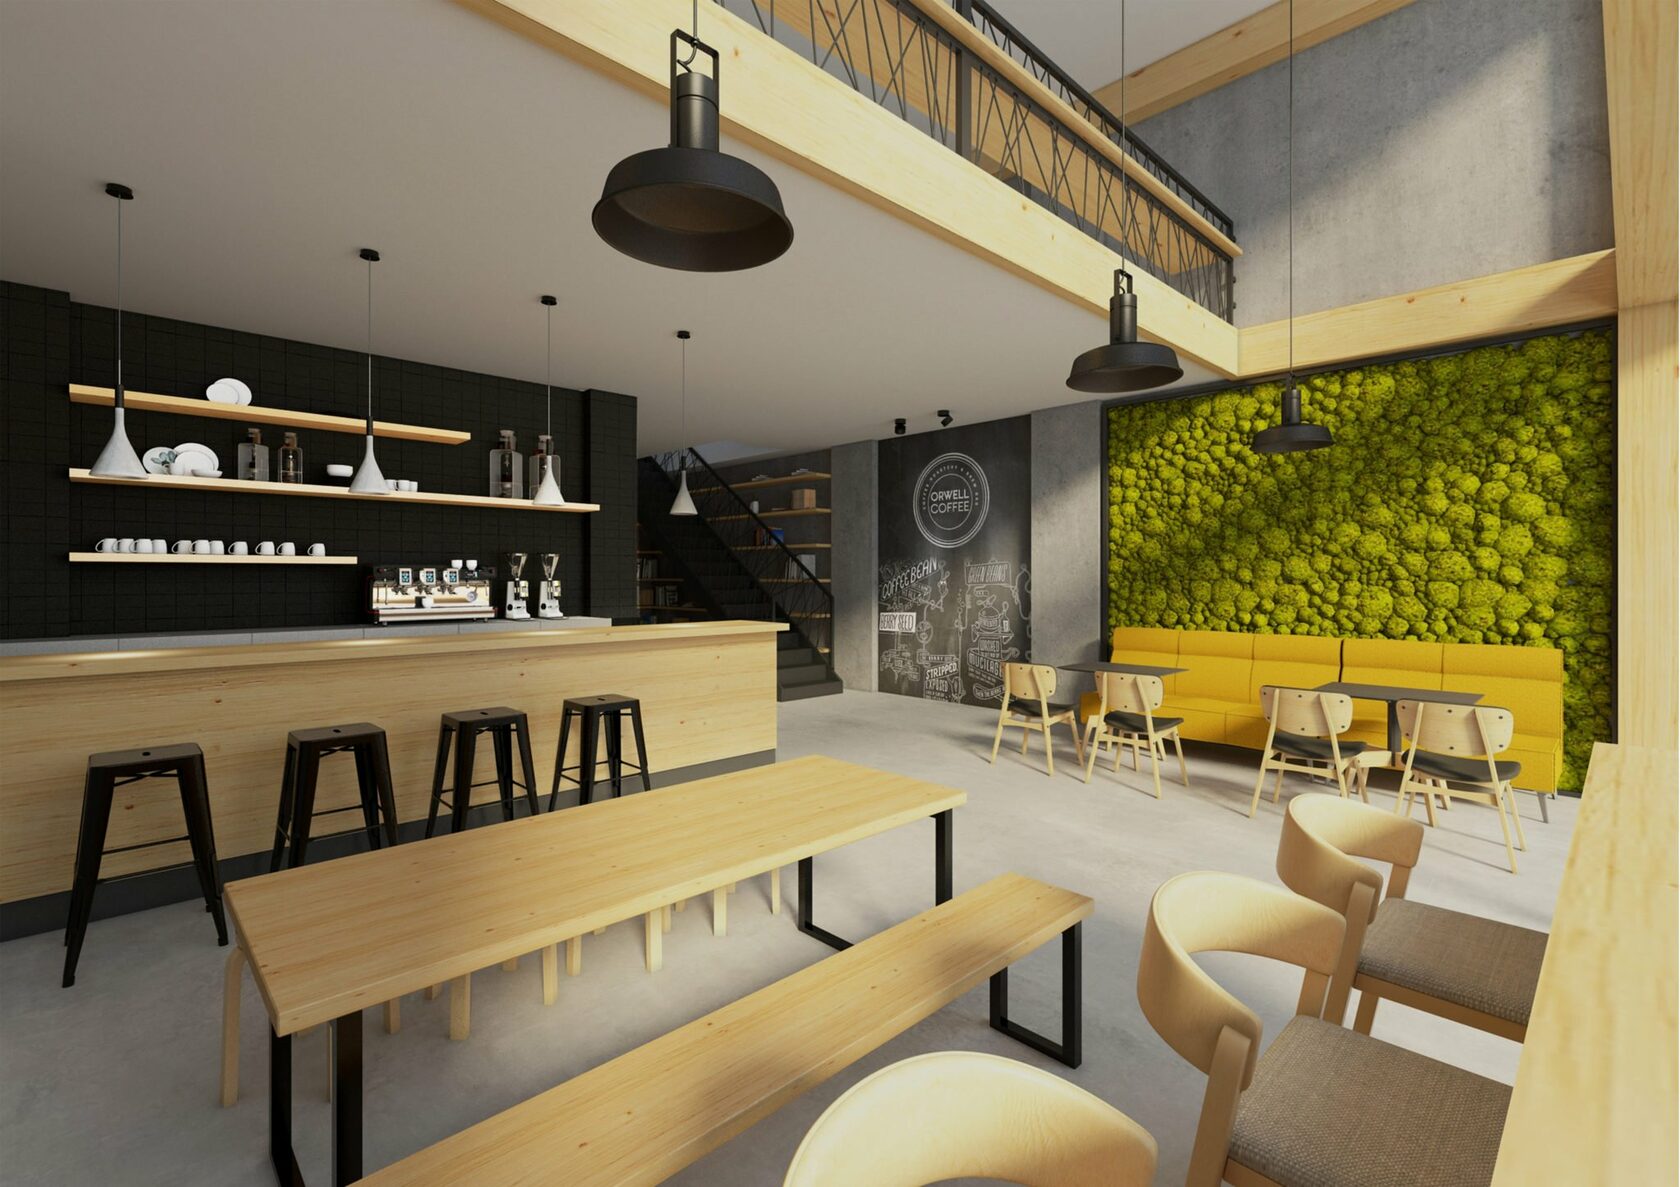 Как сделать дизайн-проект интерьера для кафе, бара или ресторана, 50 идей с фото